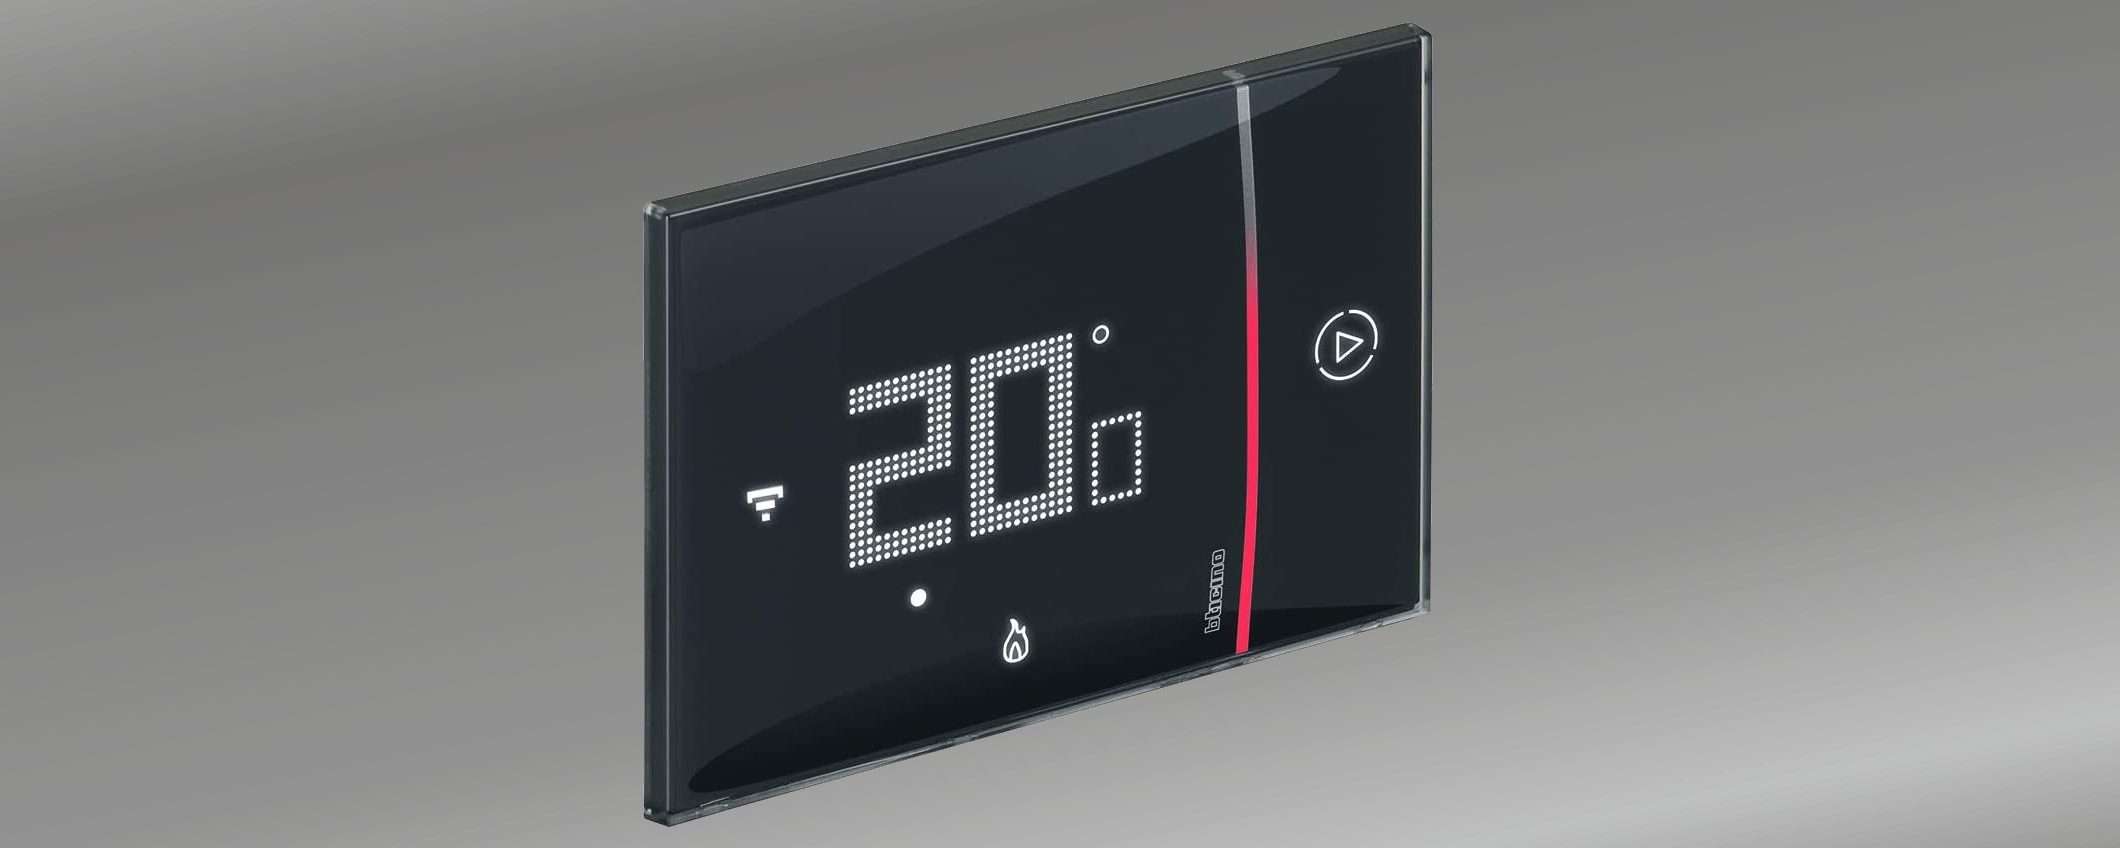 Bticino Smarther 2, termostato superiore (-28% OGGI)